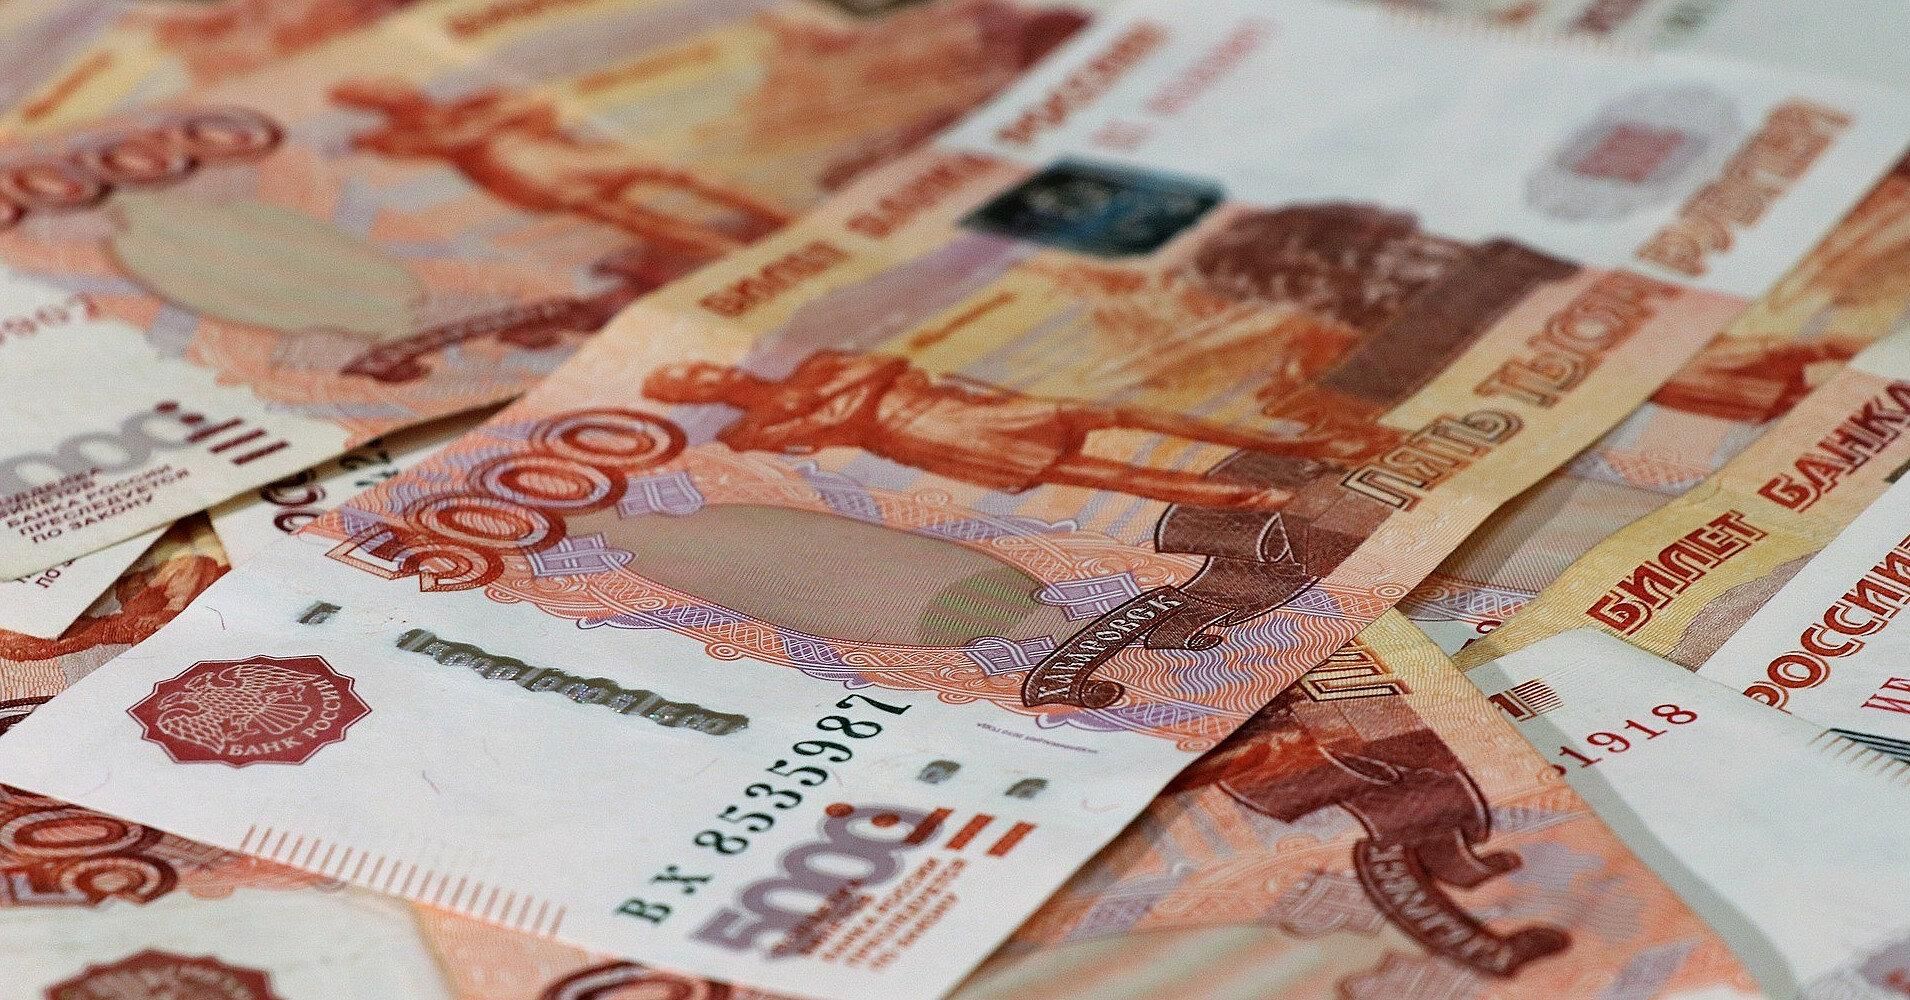 Лист А4 уже в четыре раза дороже 1 рубля, – Ходорковский